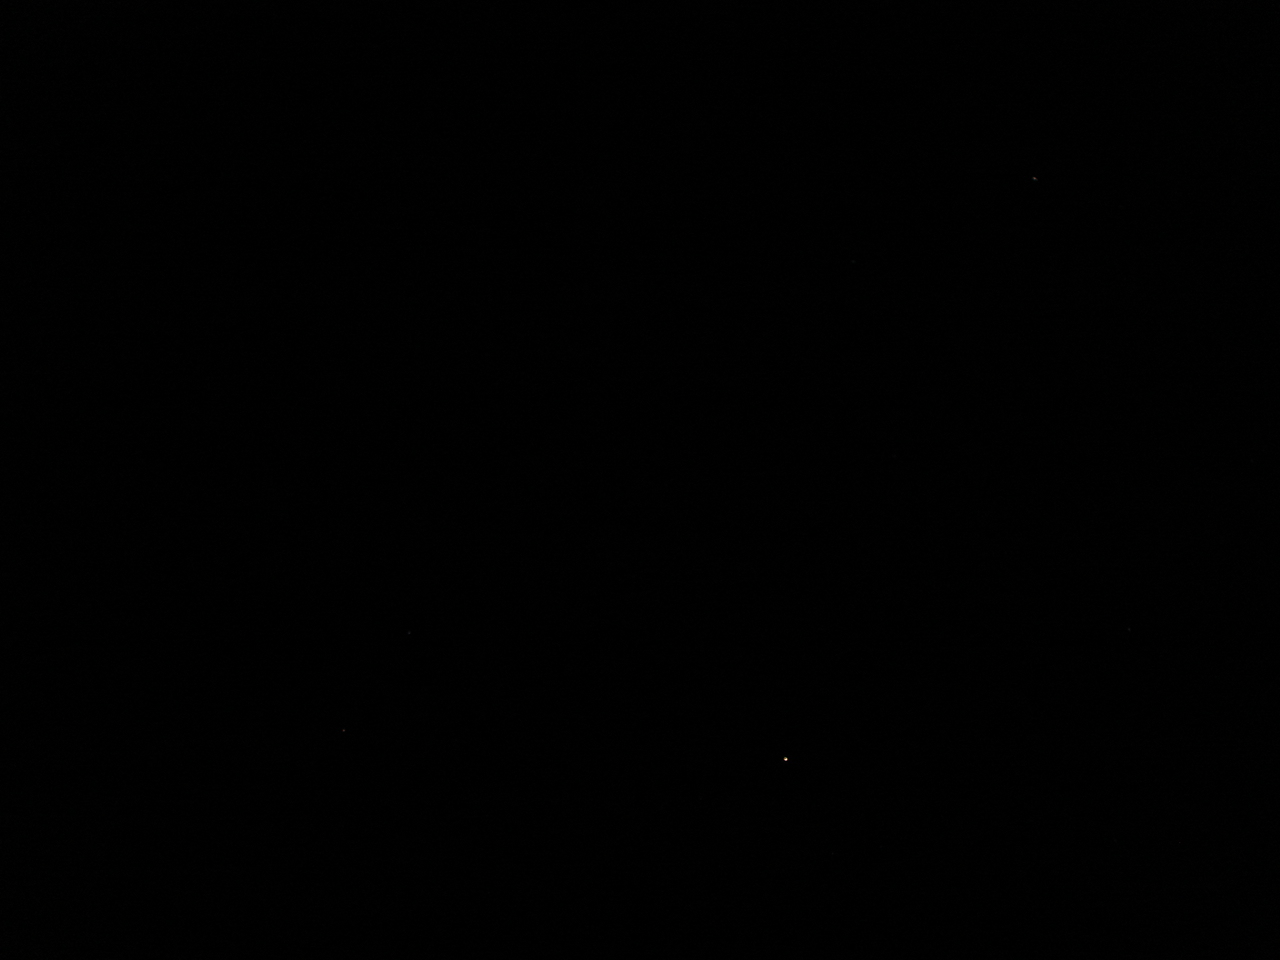 双子座流星群_c0136041_2381049.jpg